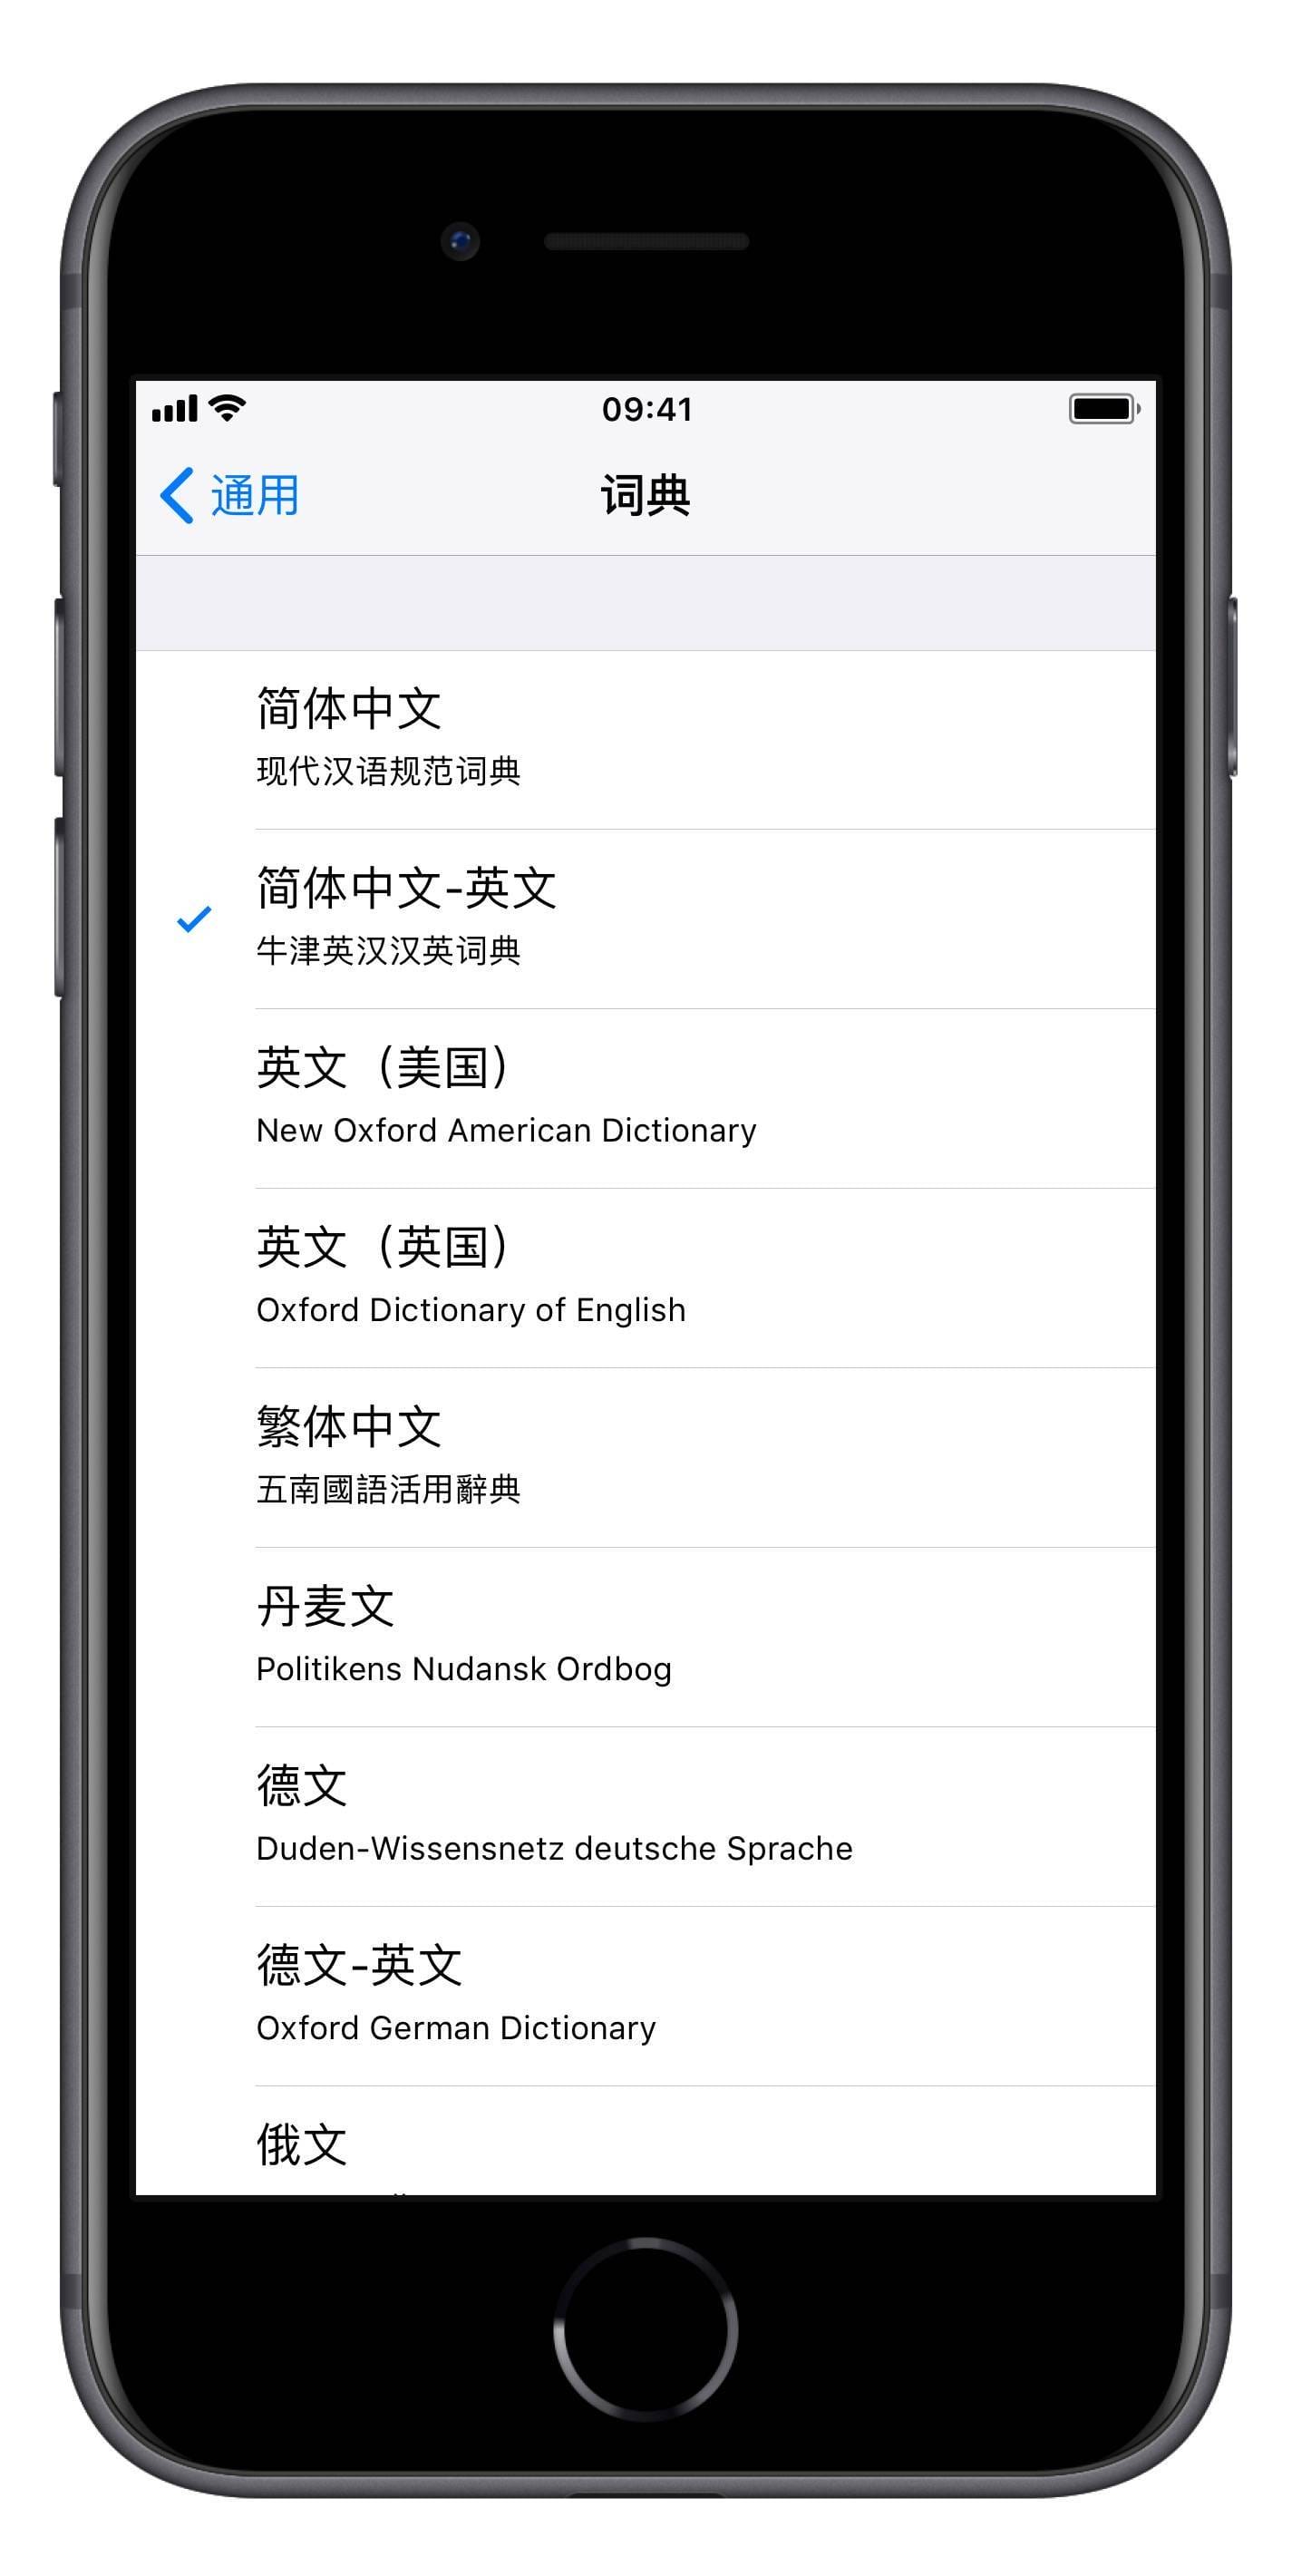 教你在 iPhone 上实现划词翻译、搜索